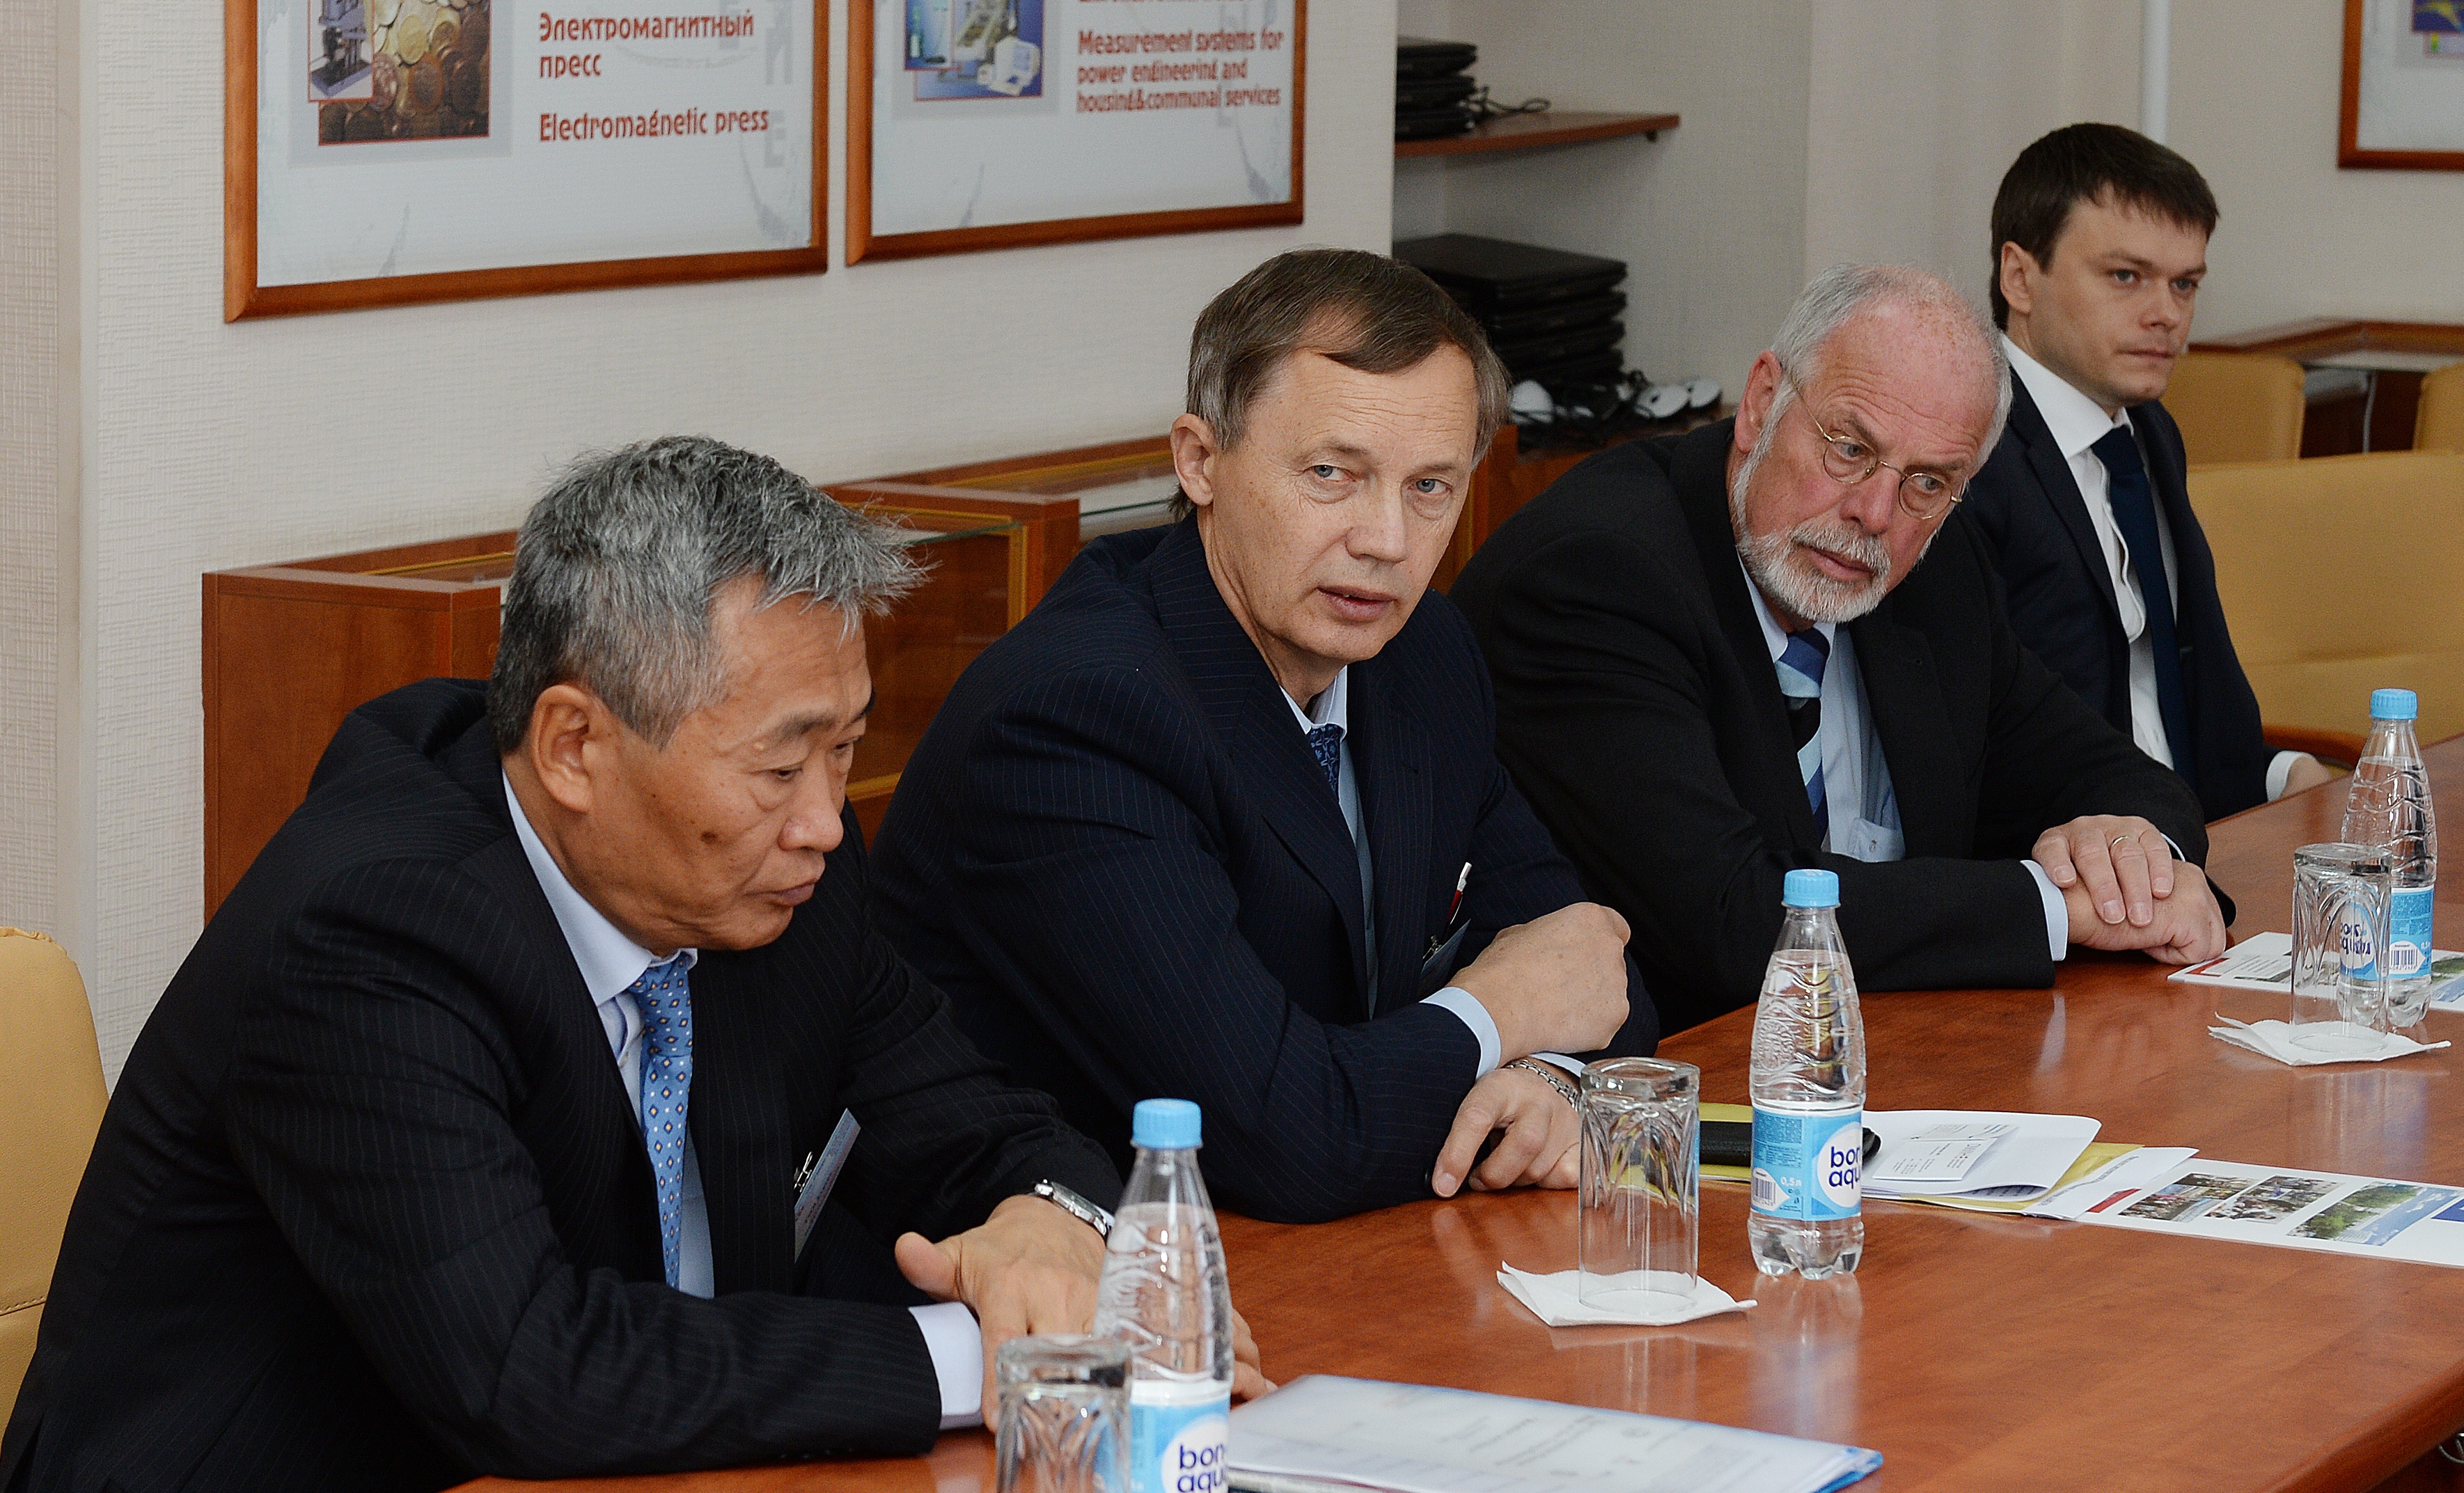 Discussion in the vice-chancellor's office. L to R: E. Tsoi (NSTU), G. Rastorguev (NSTU), P. Funke (DFG), A. Shcheglov (RoSMU)